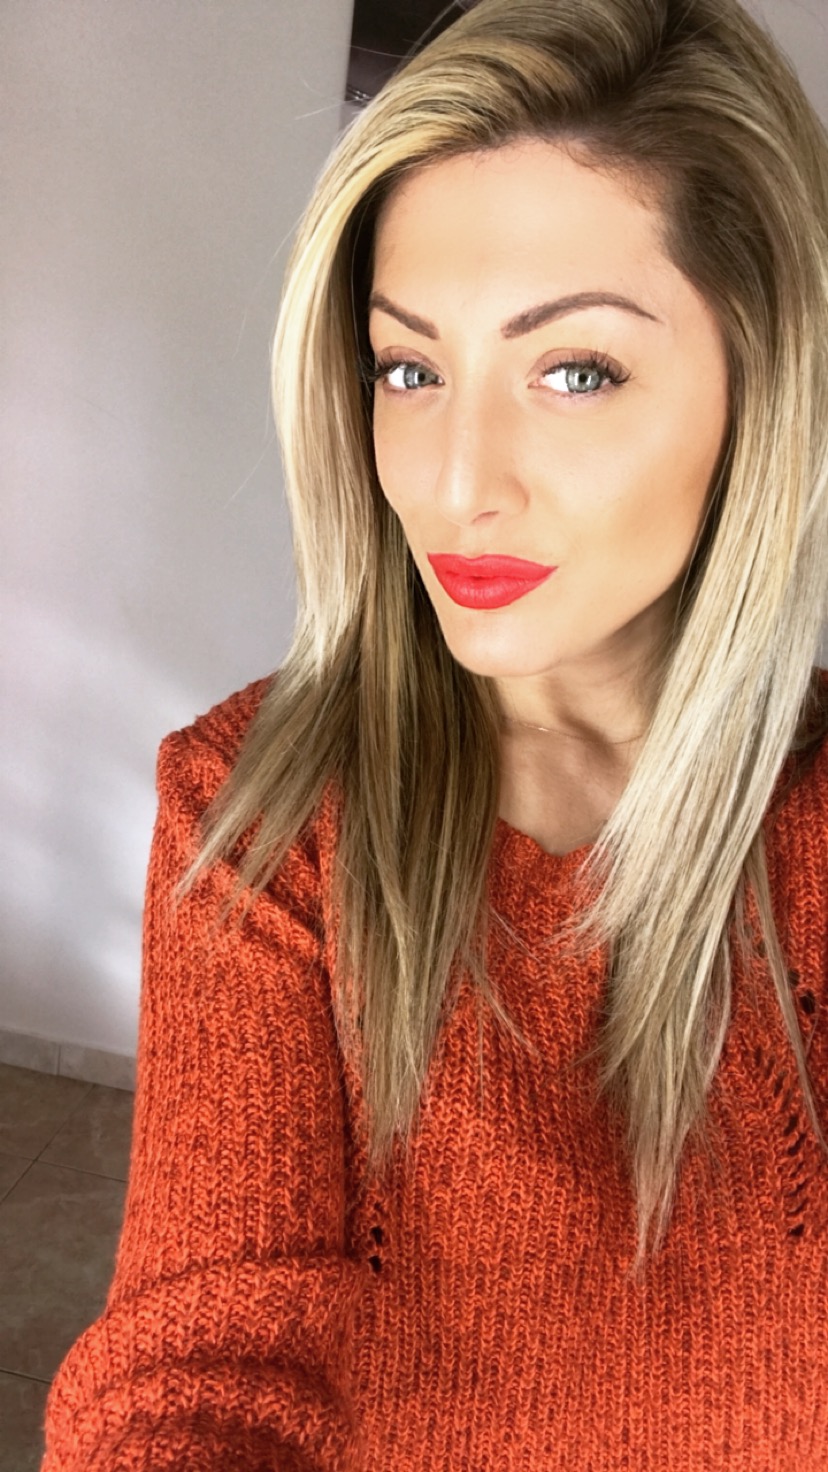 Leanna Makeup Artist - Λεαννα Μαρκογλου, Make up artist, Hair styling